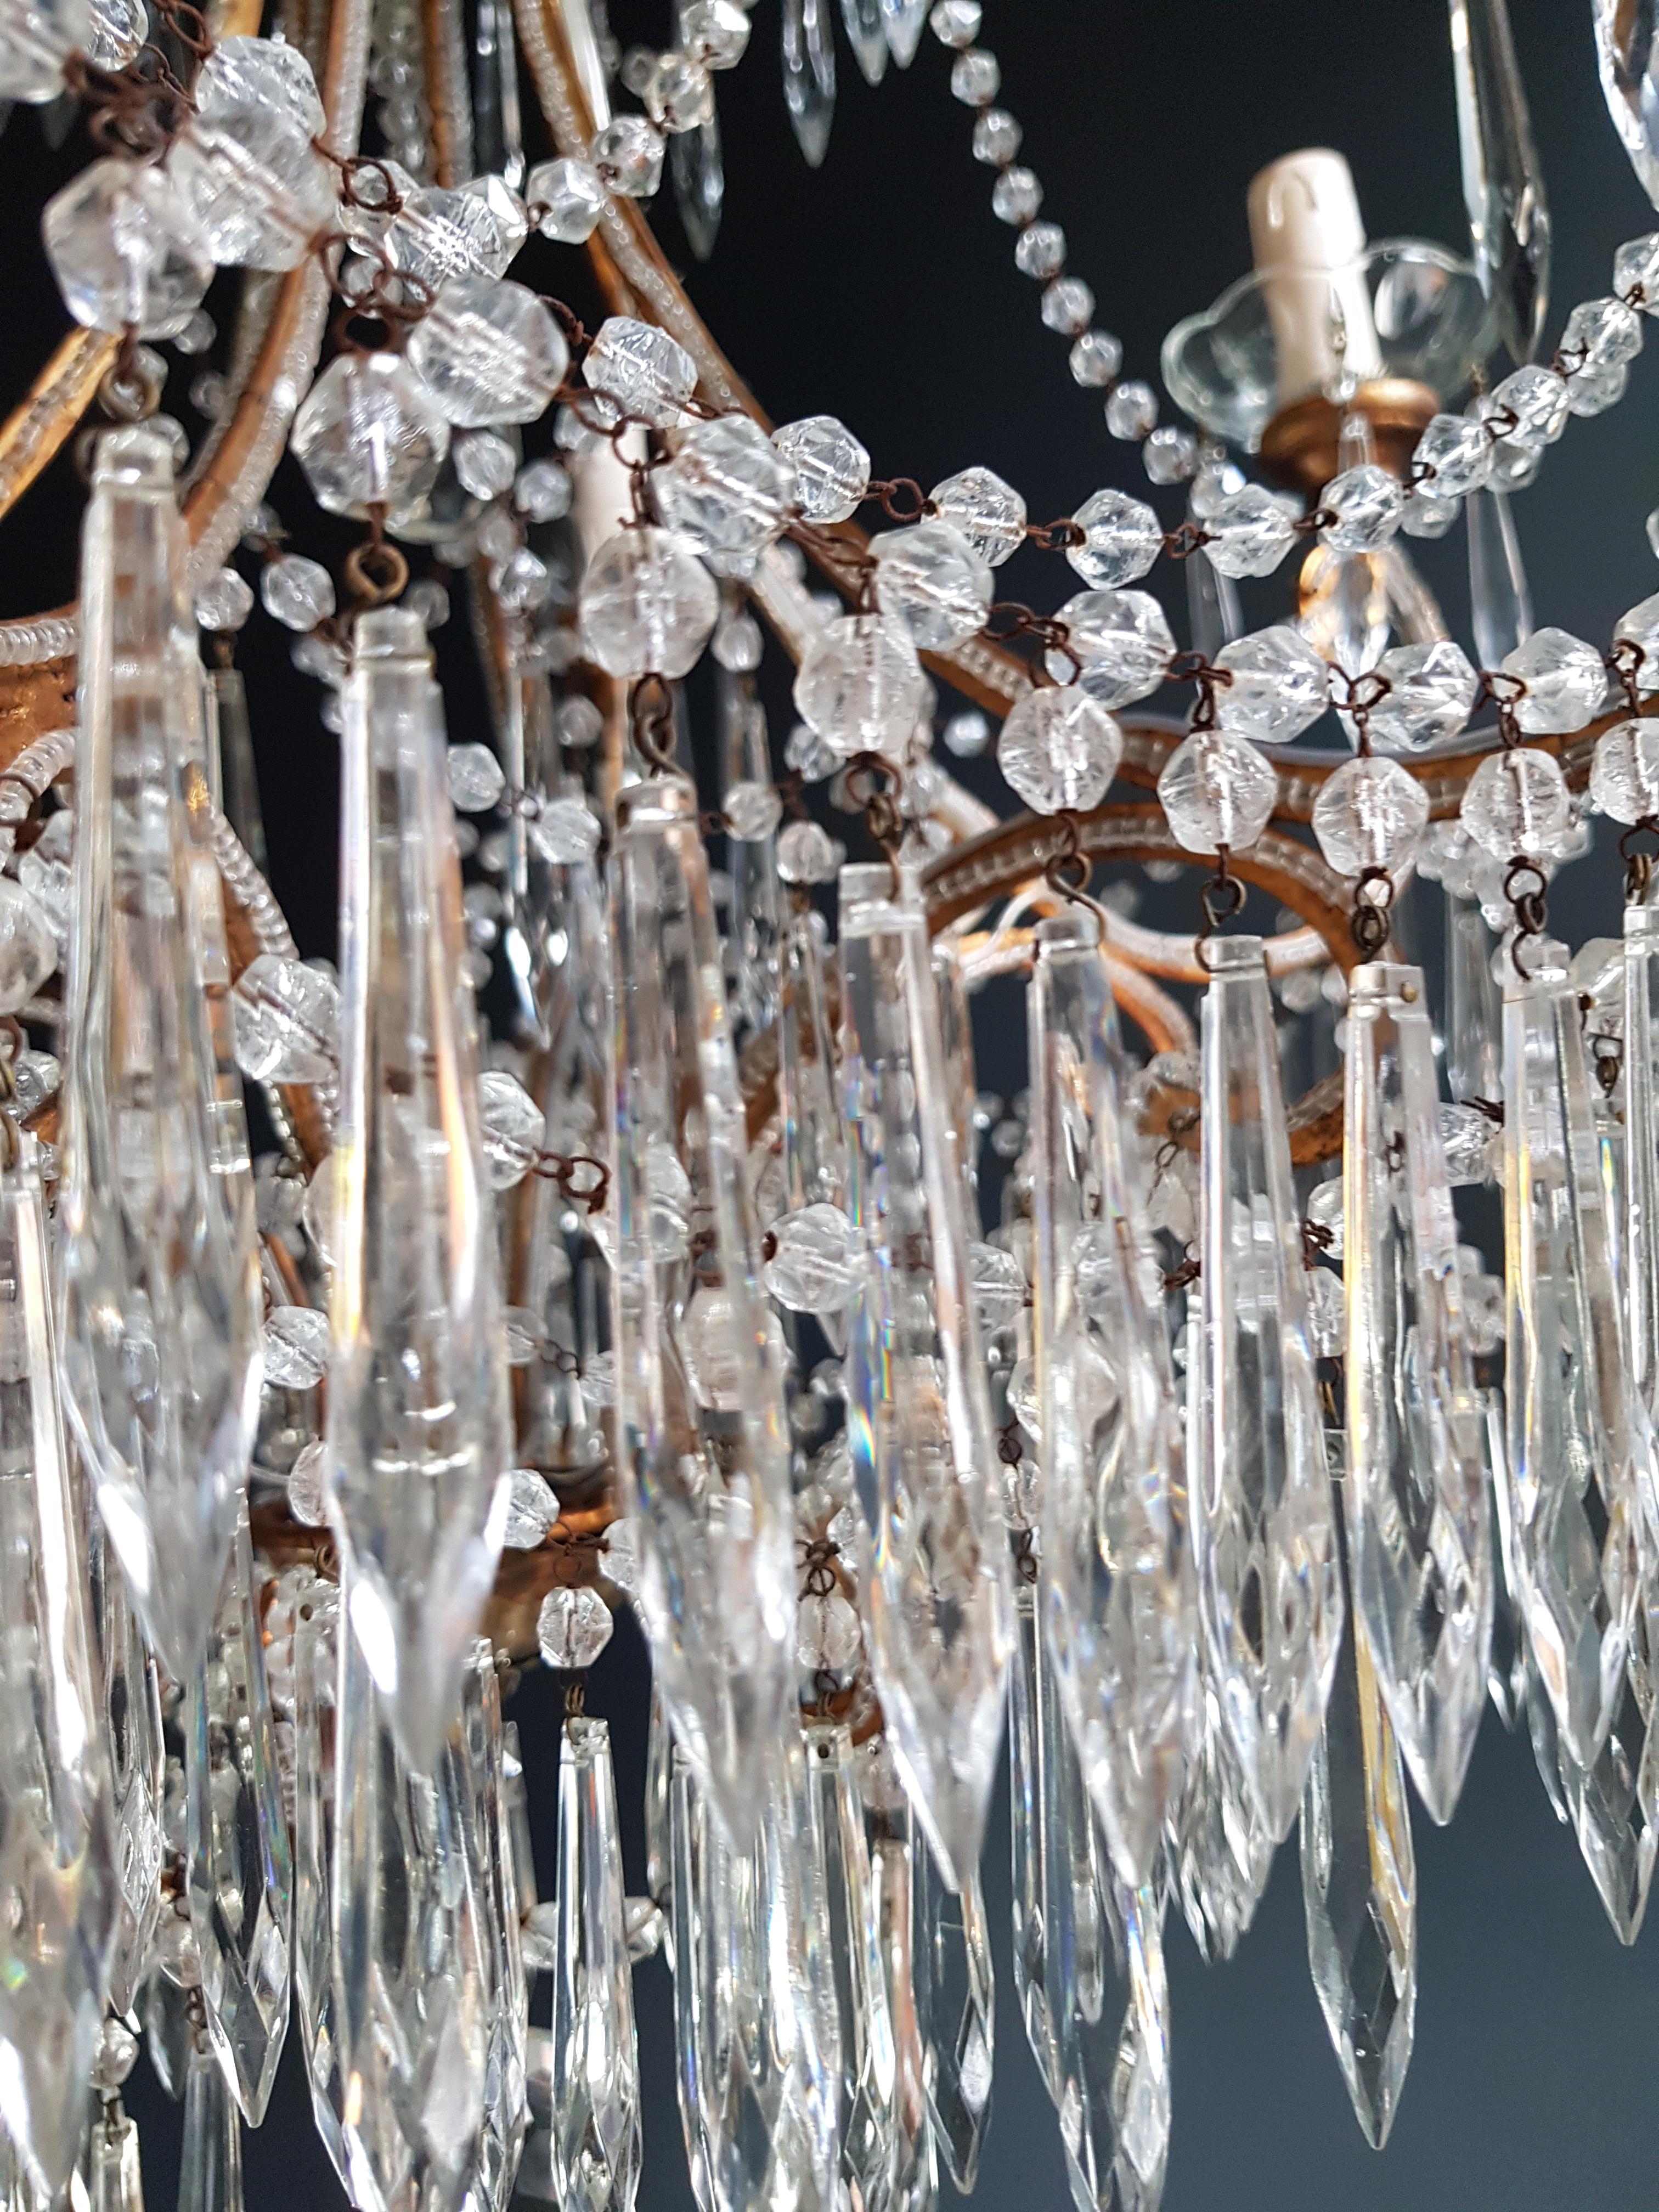 Beaded Crystal Chandelier Antique Ceiling Lamp Lustre Art Nouveau Wood 1